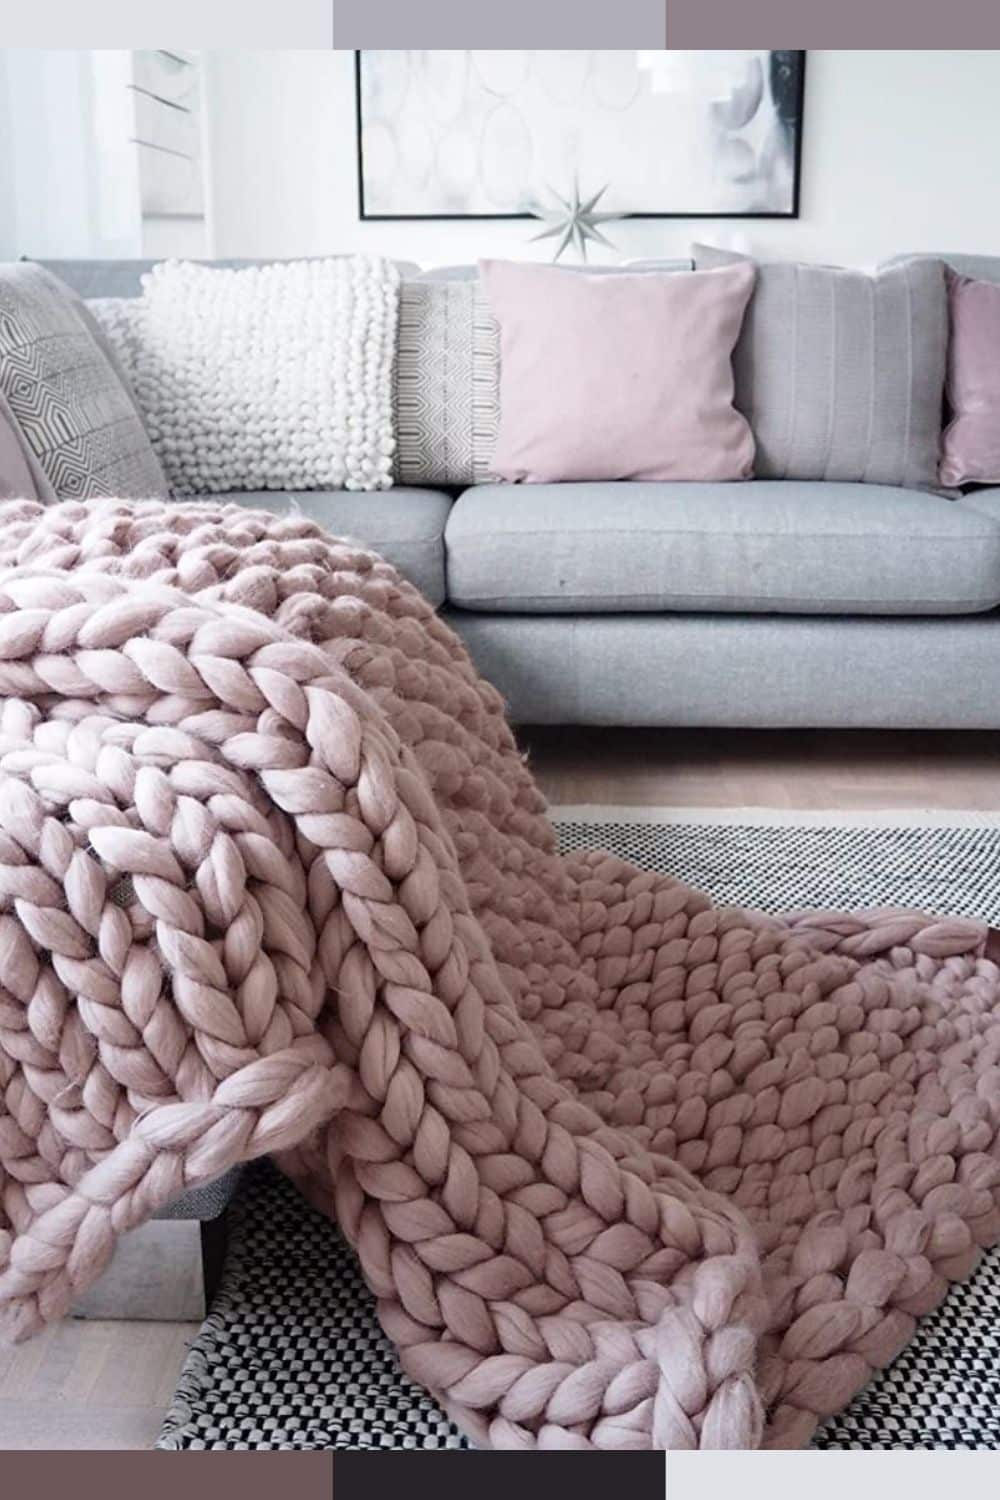 warmest blankets